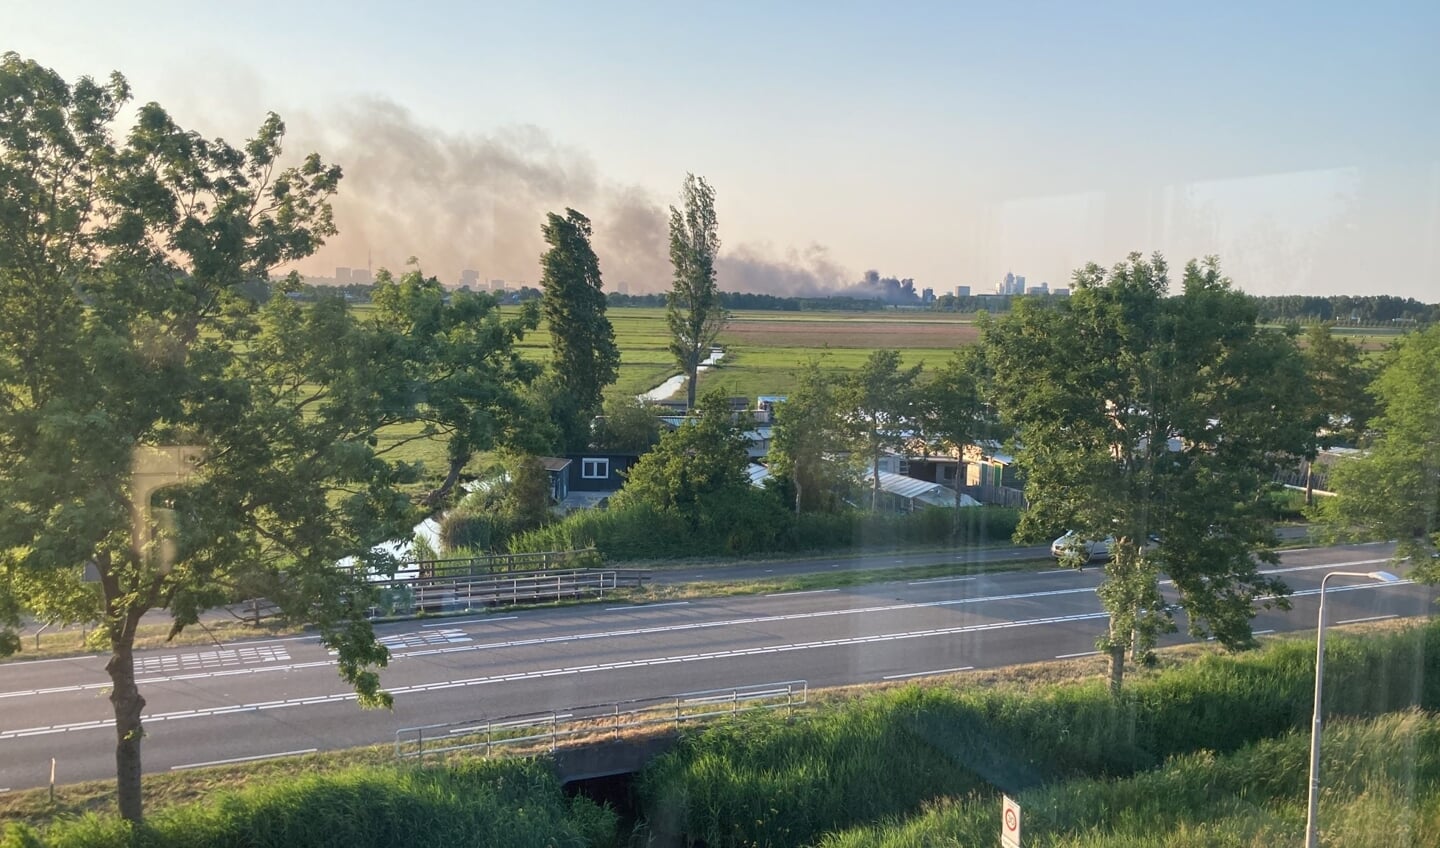 De rook is te zien vanuit Ouderkerk.